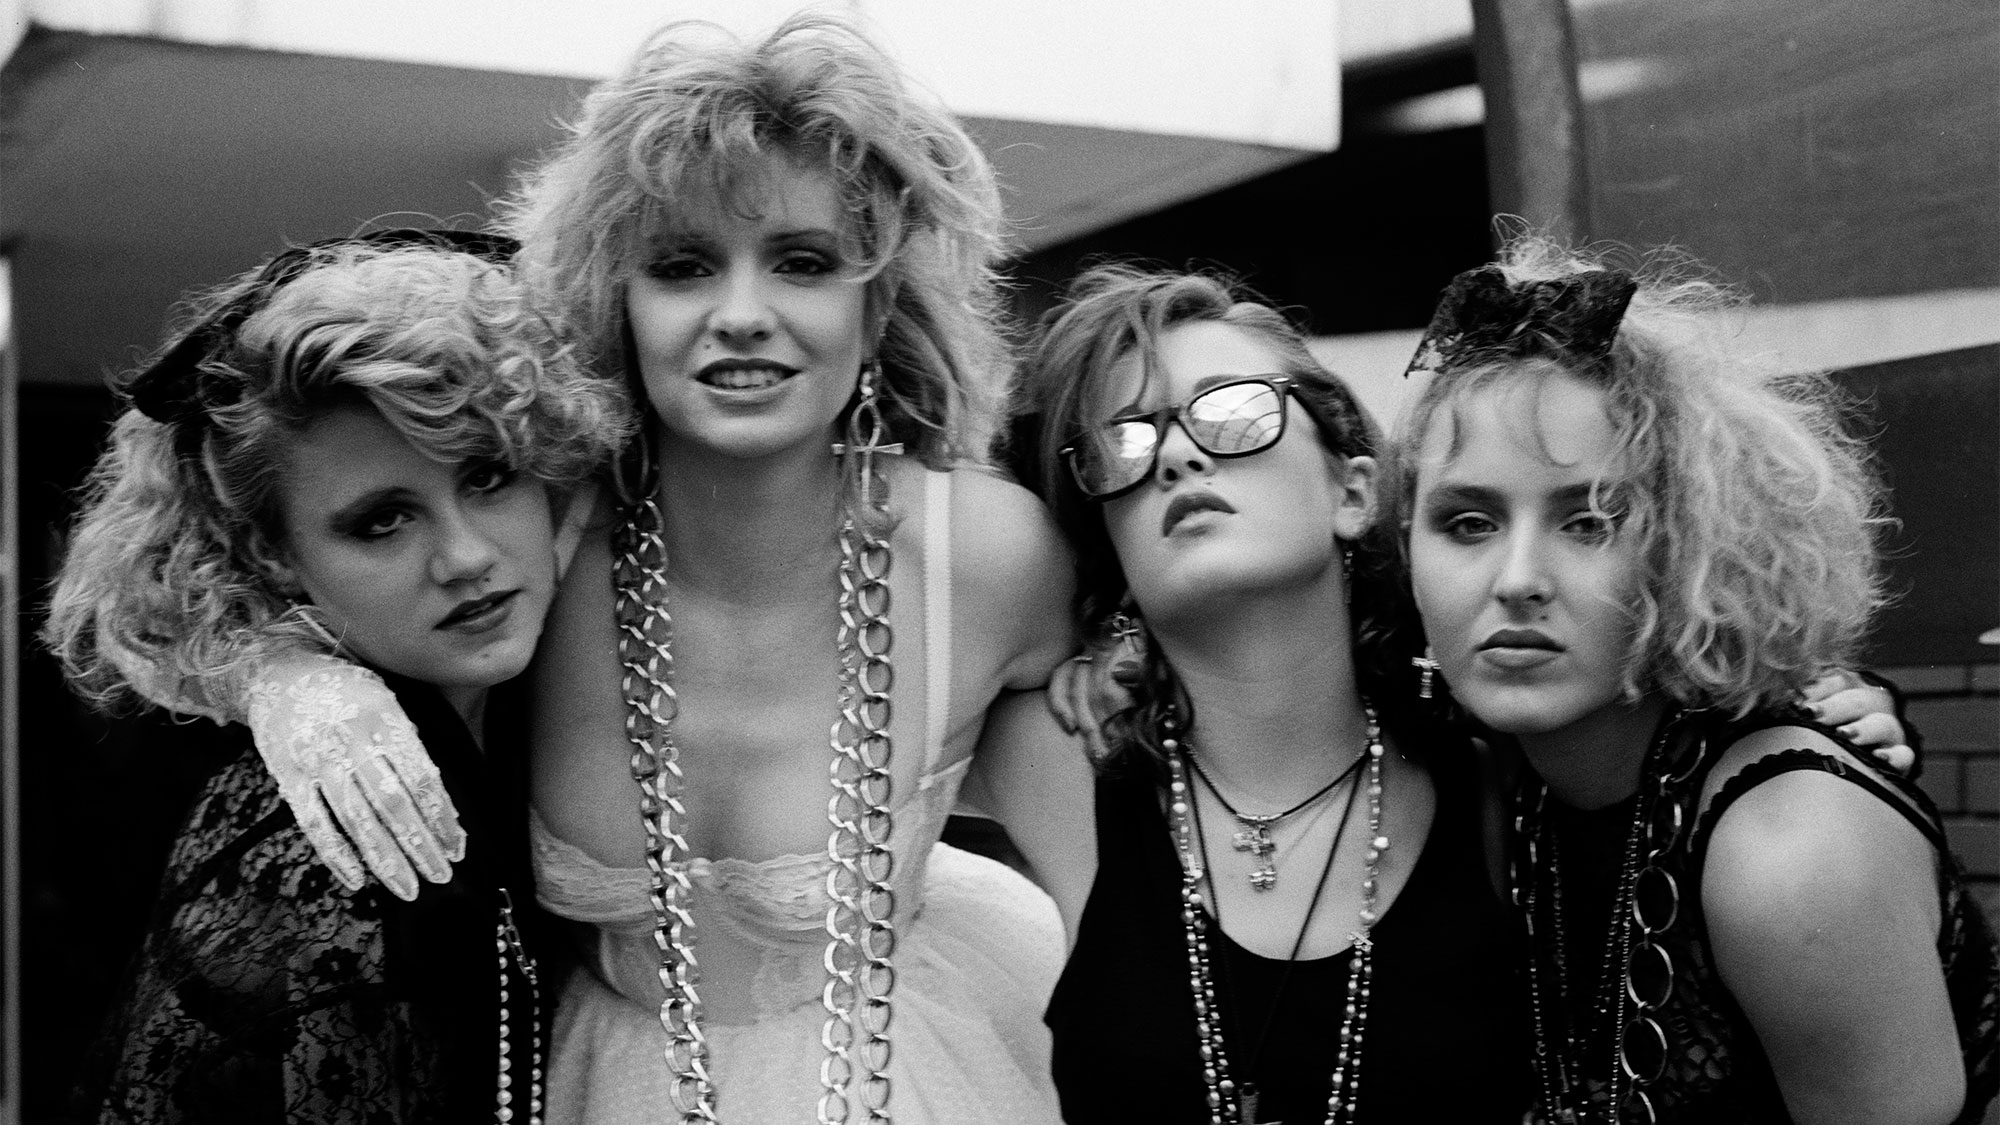 Лесбиянки в стиле 80-х